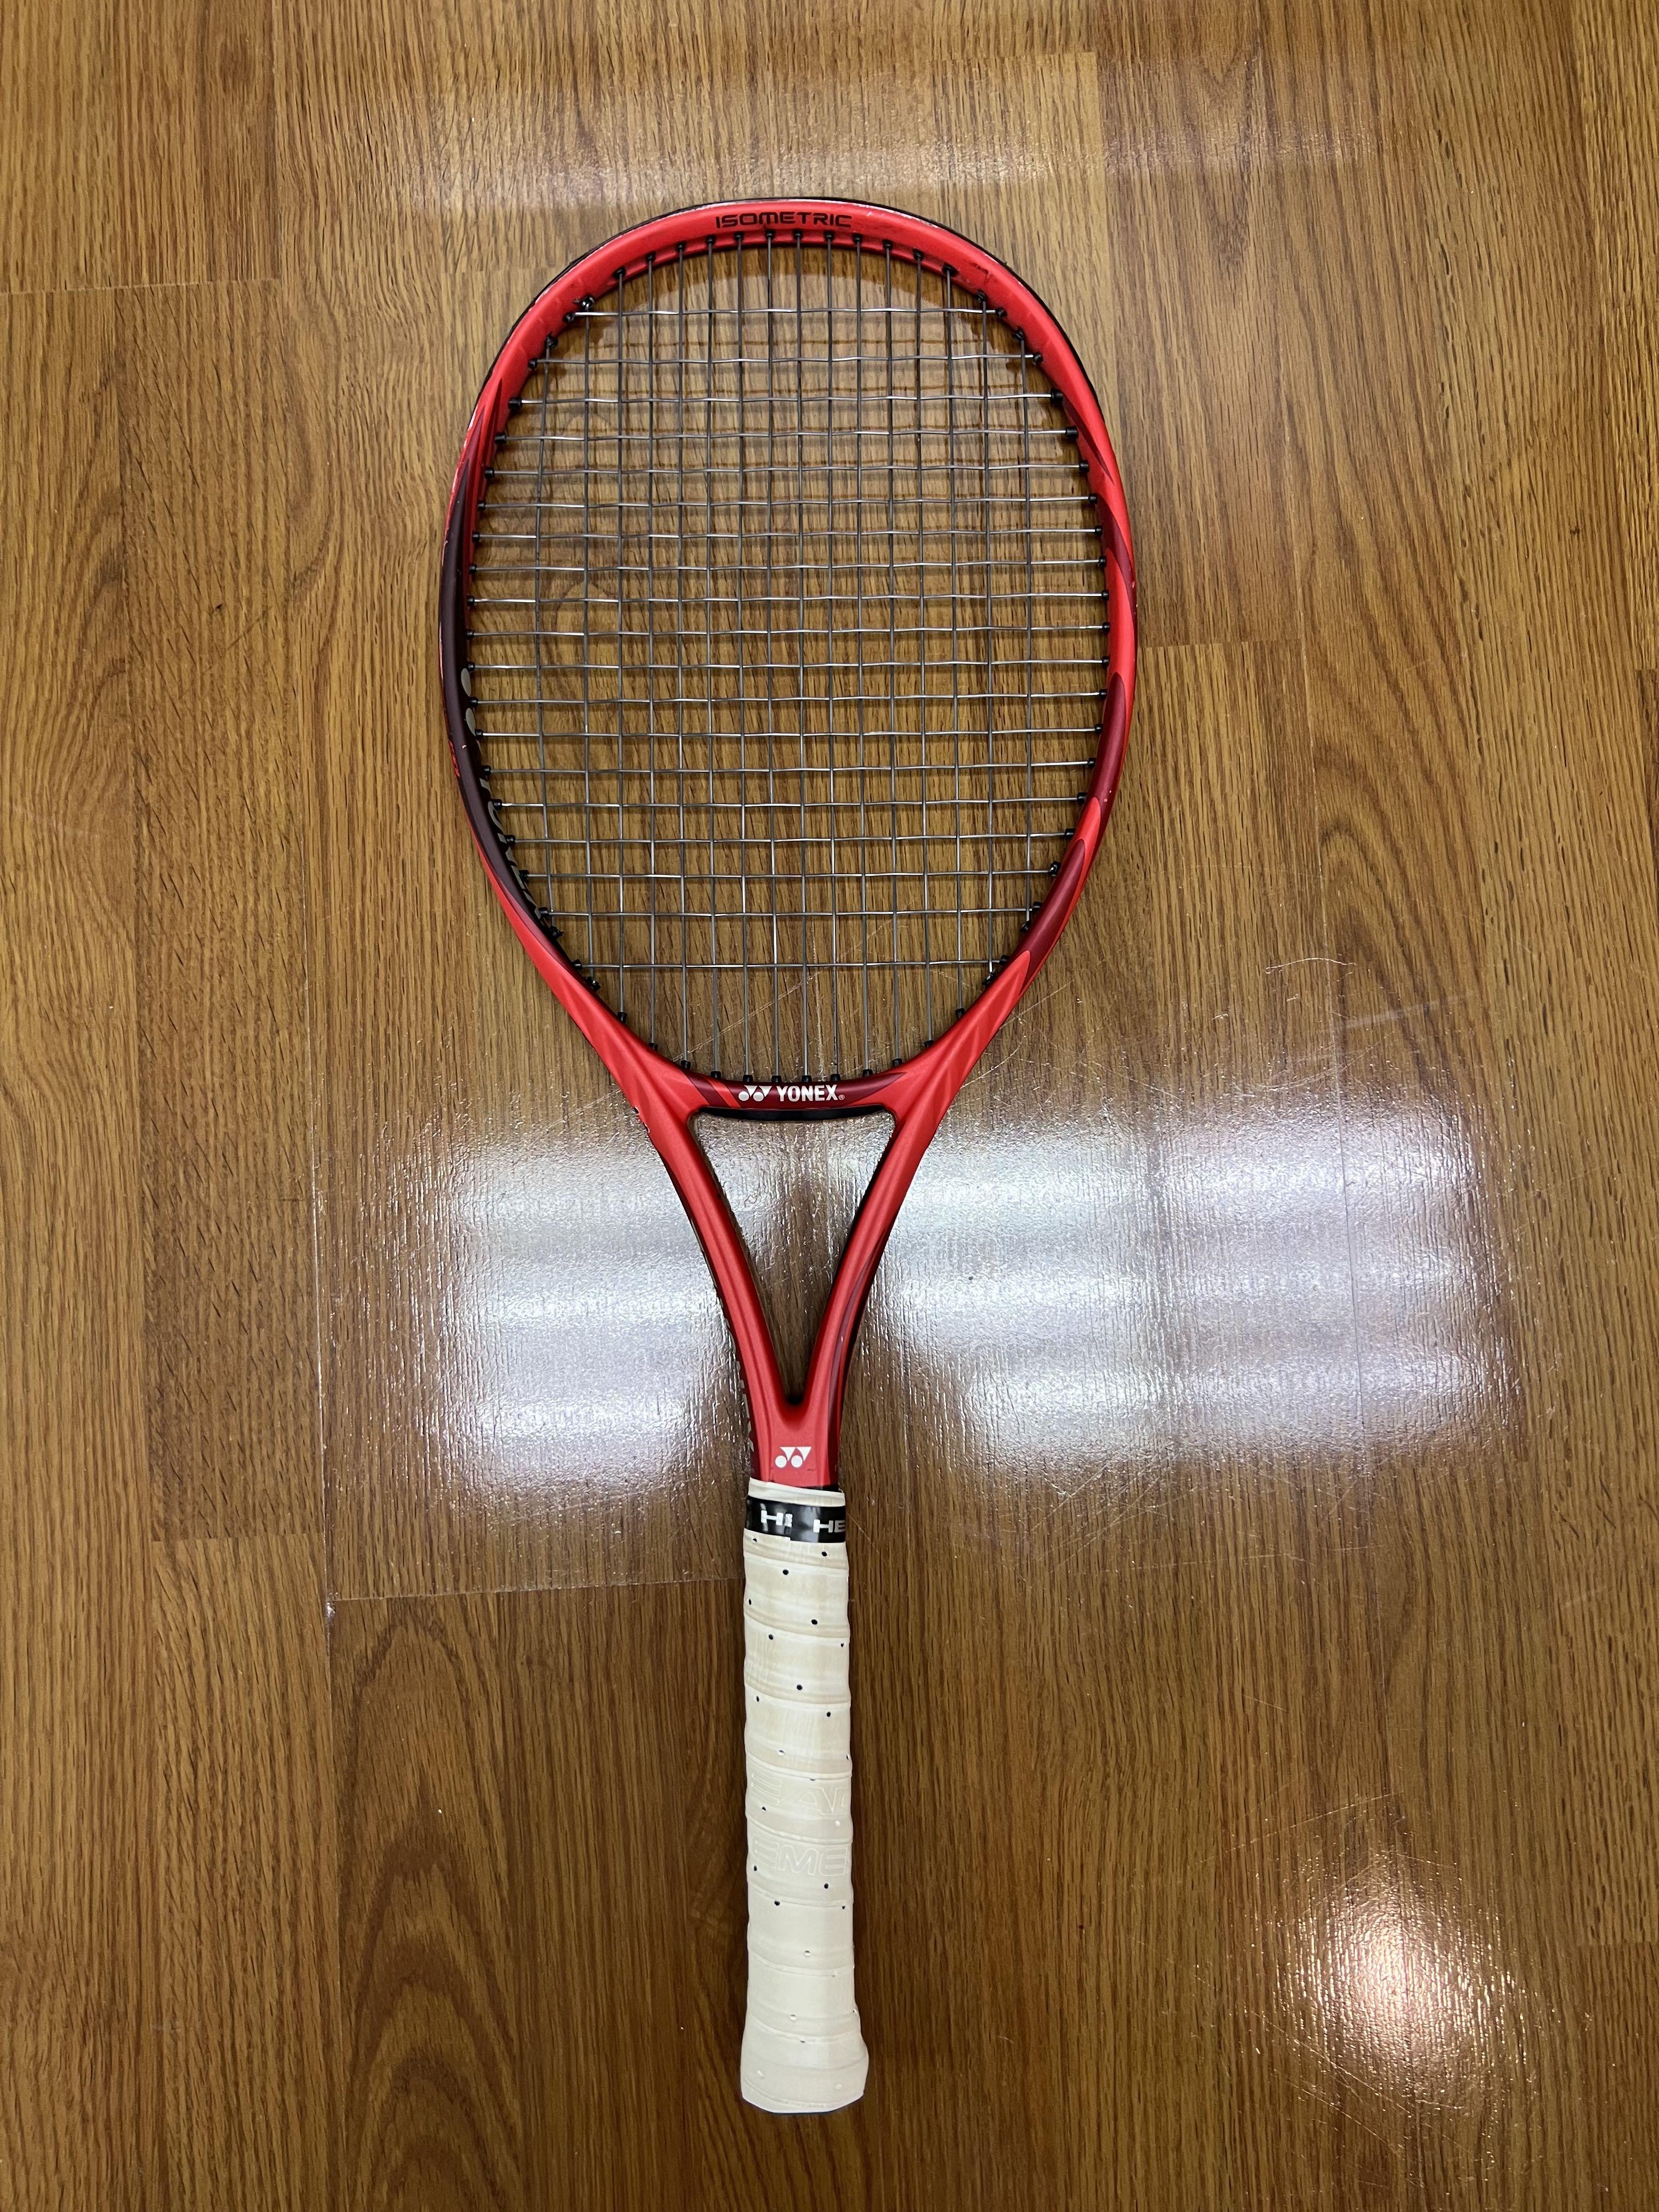 Yonex VCORE 98 Grip 4 紅色網球球拍, 運動產品, 運動與體育, 運動與